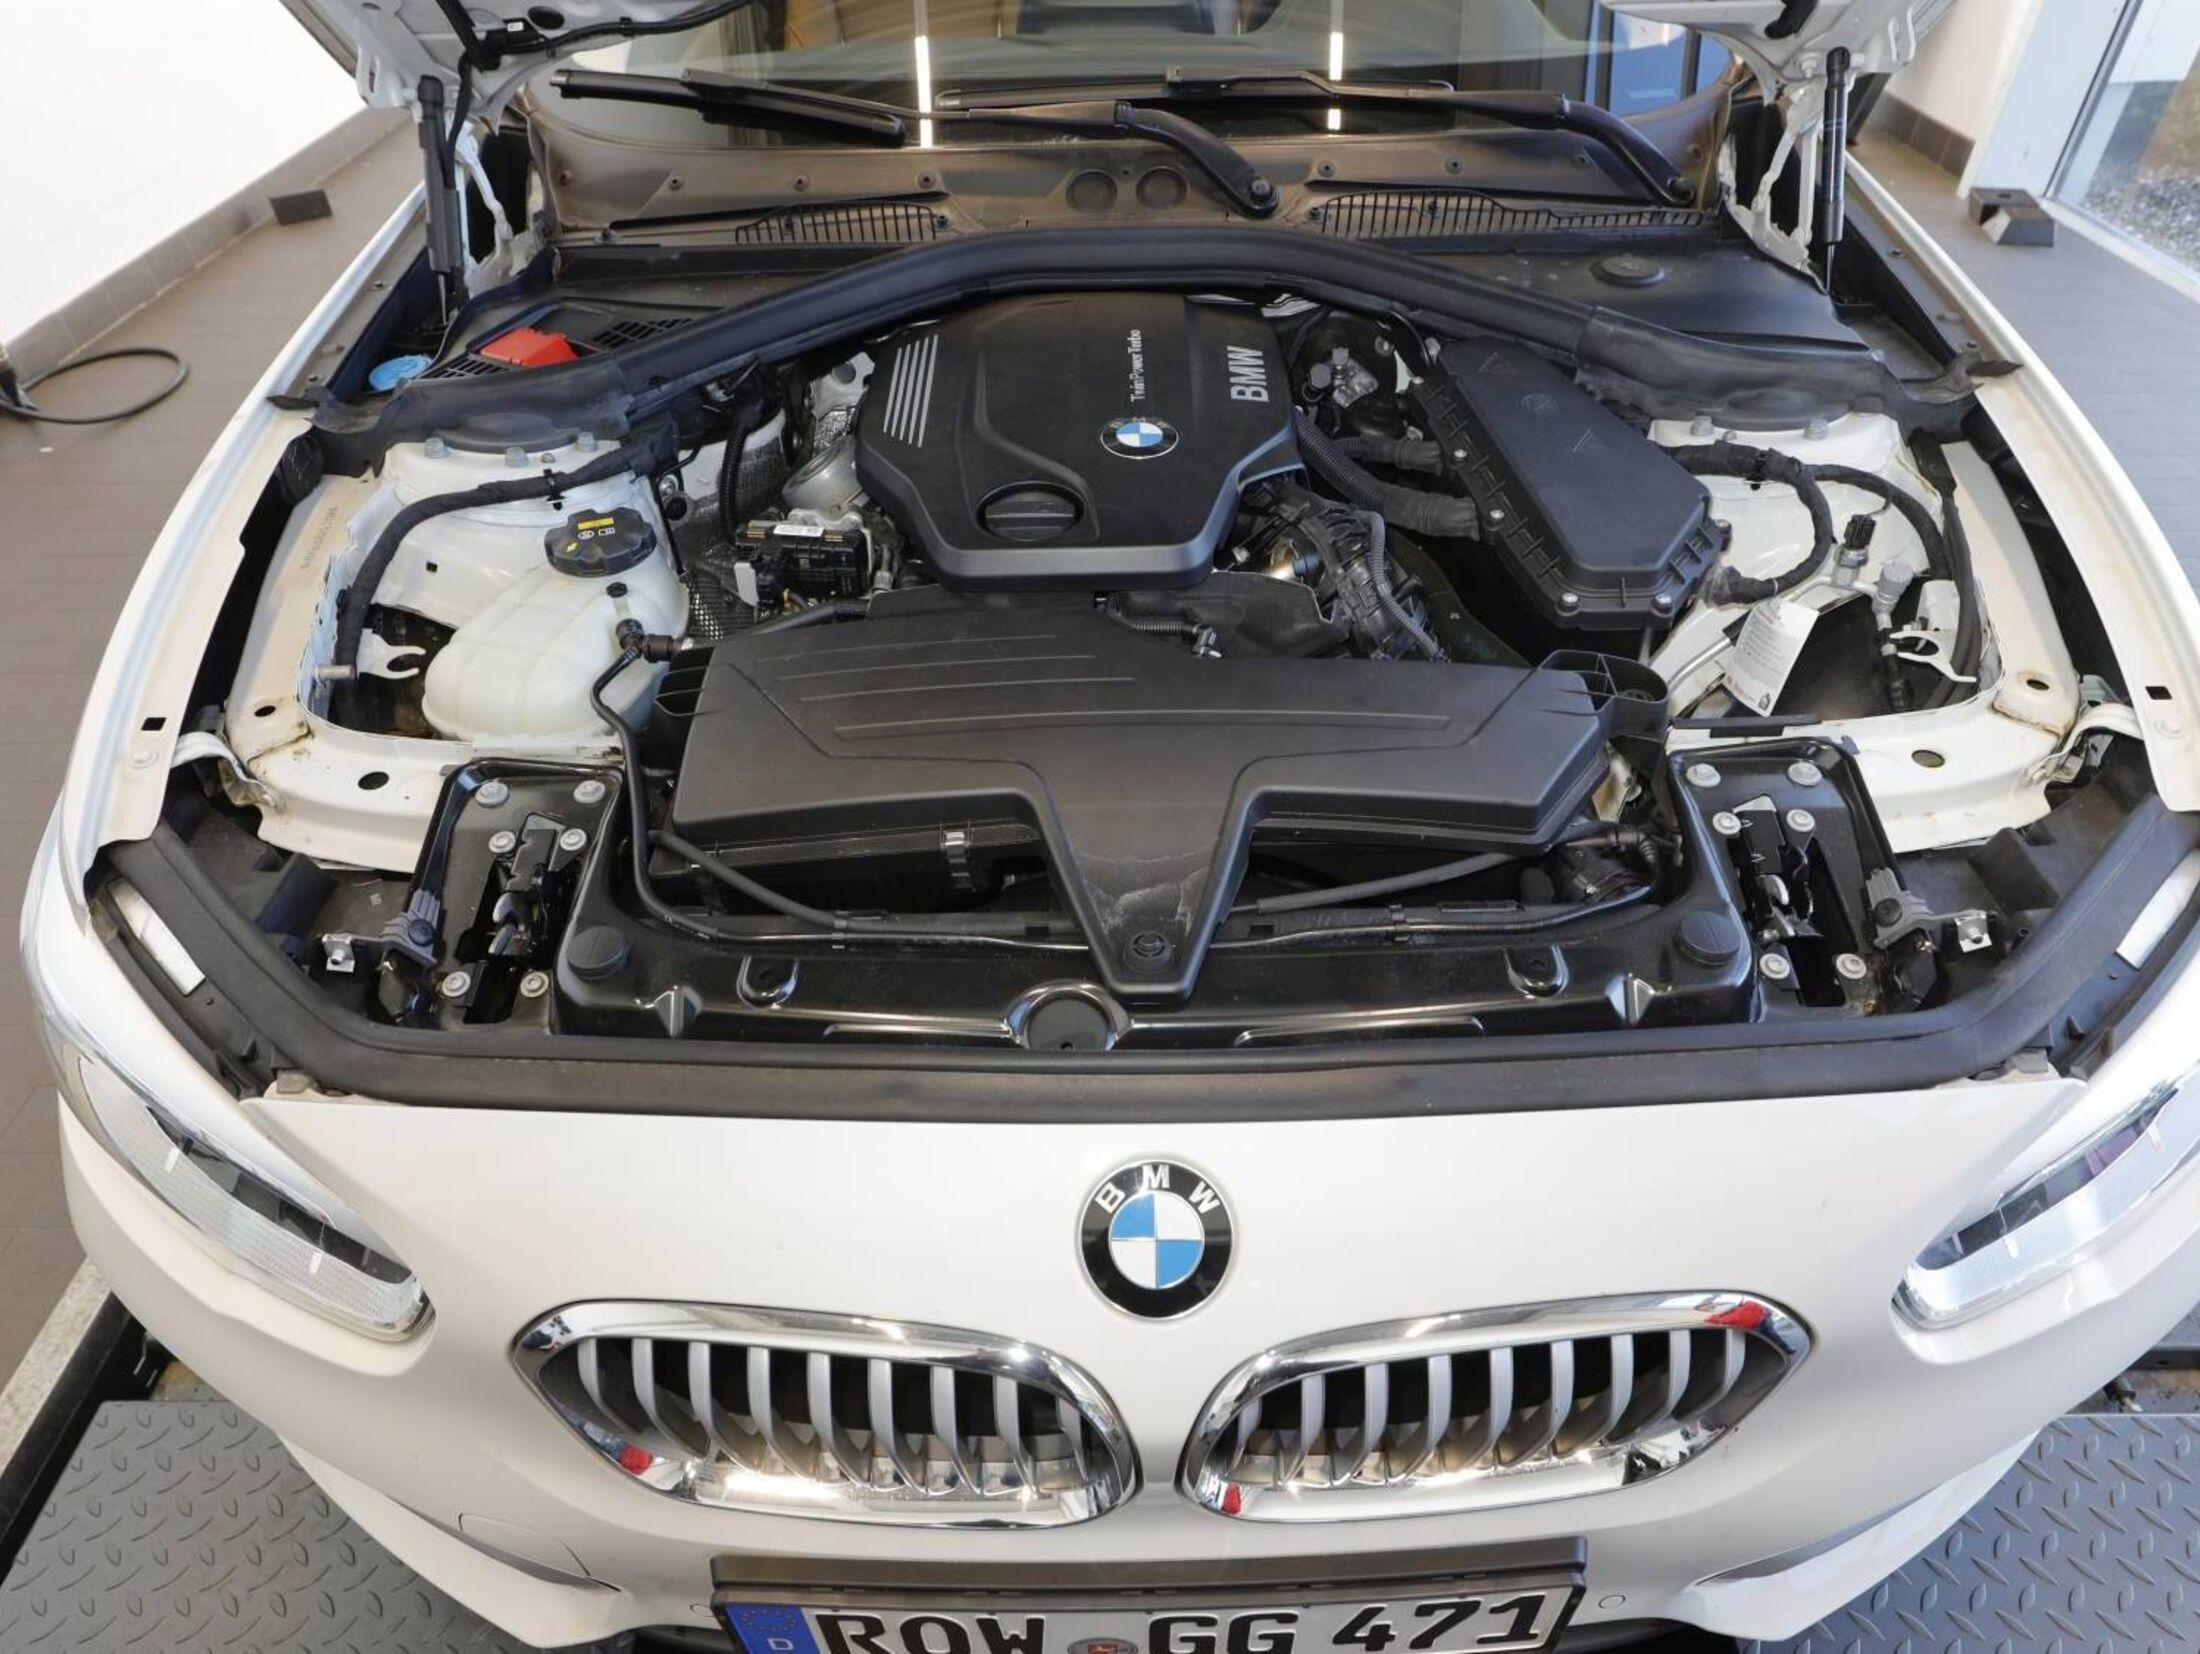 BMW 1er: Technische Daten, Maße, Innenraum